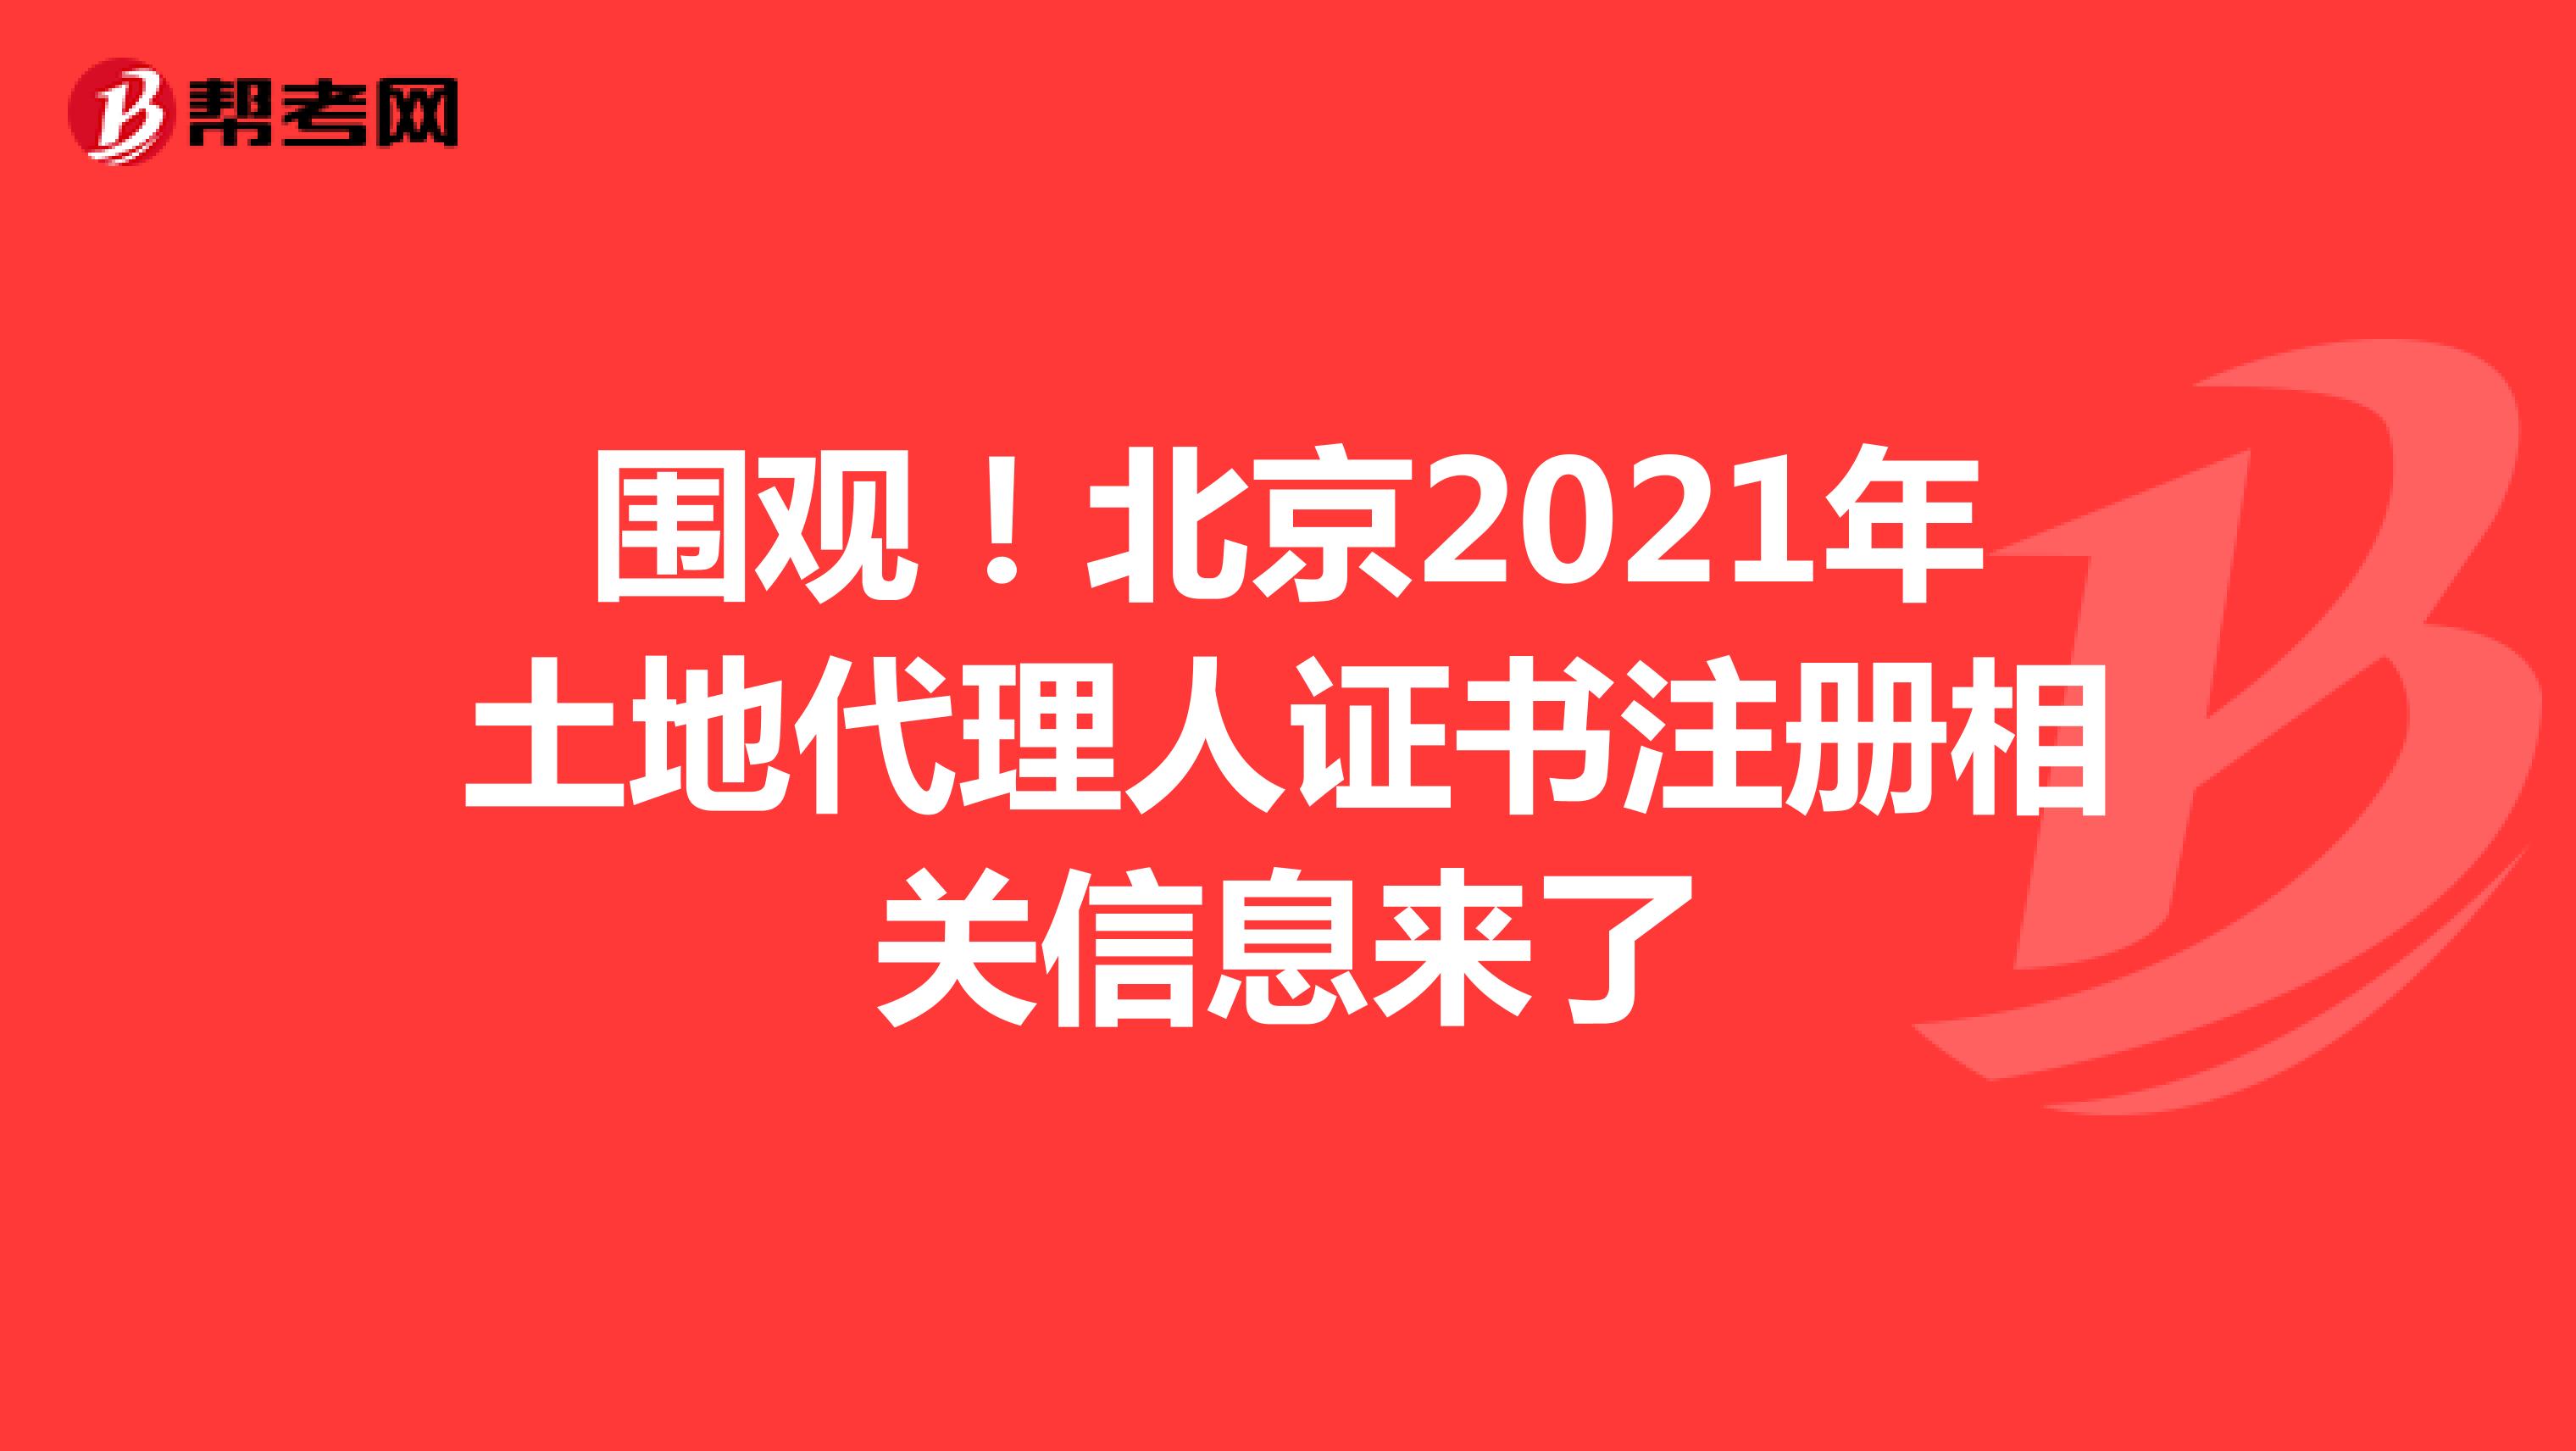 围观！北京2021年土地代理人证书注册相关信息来了